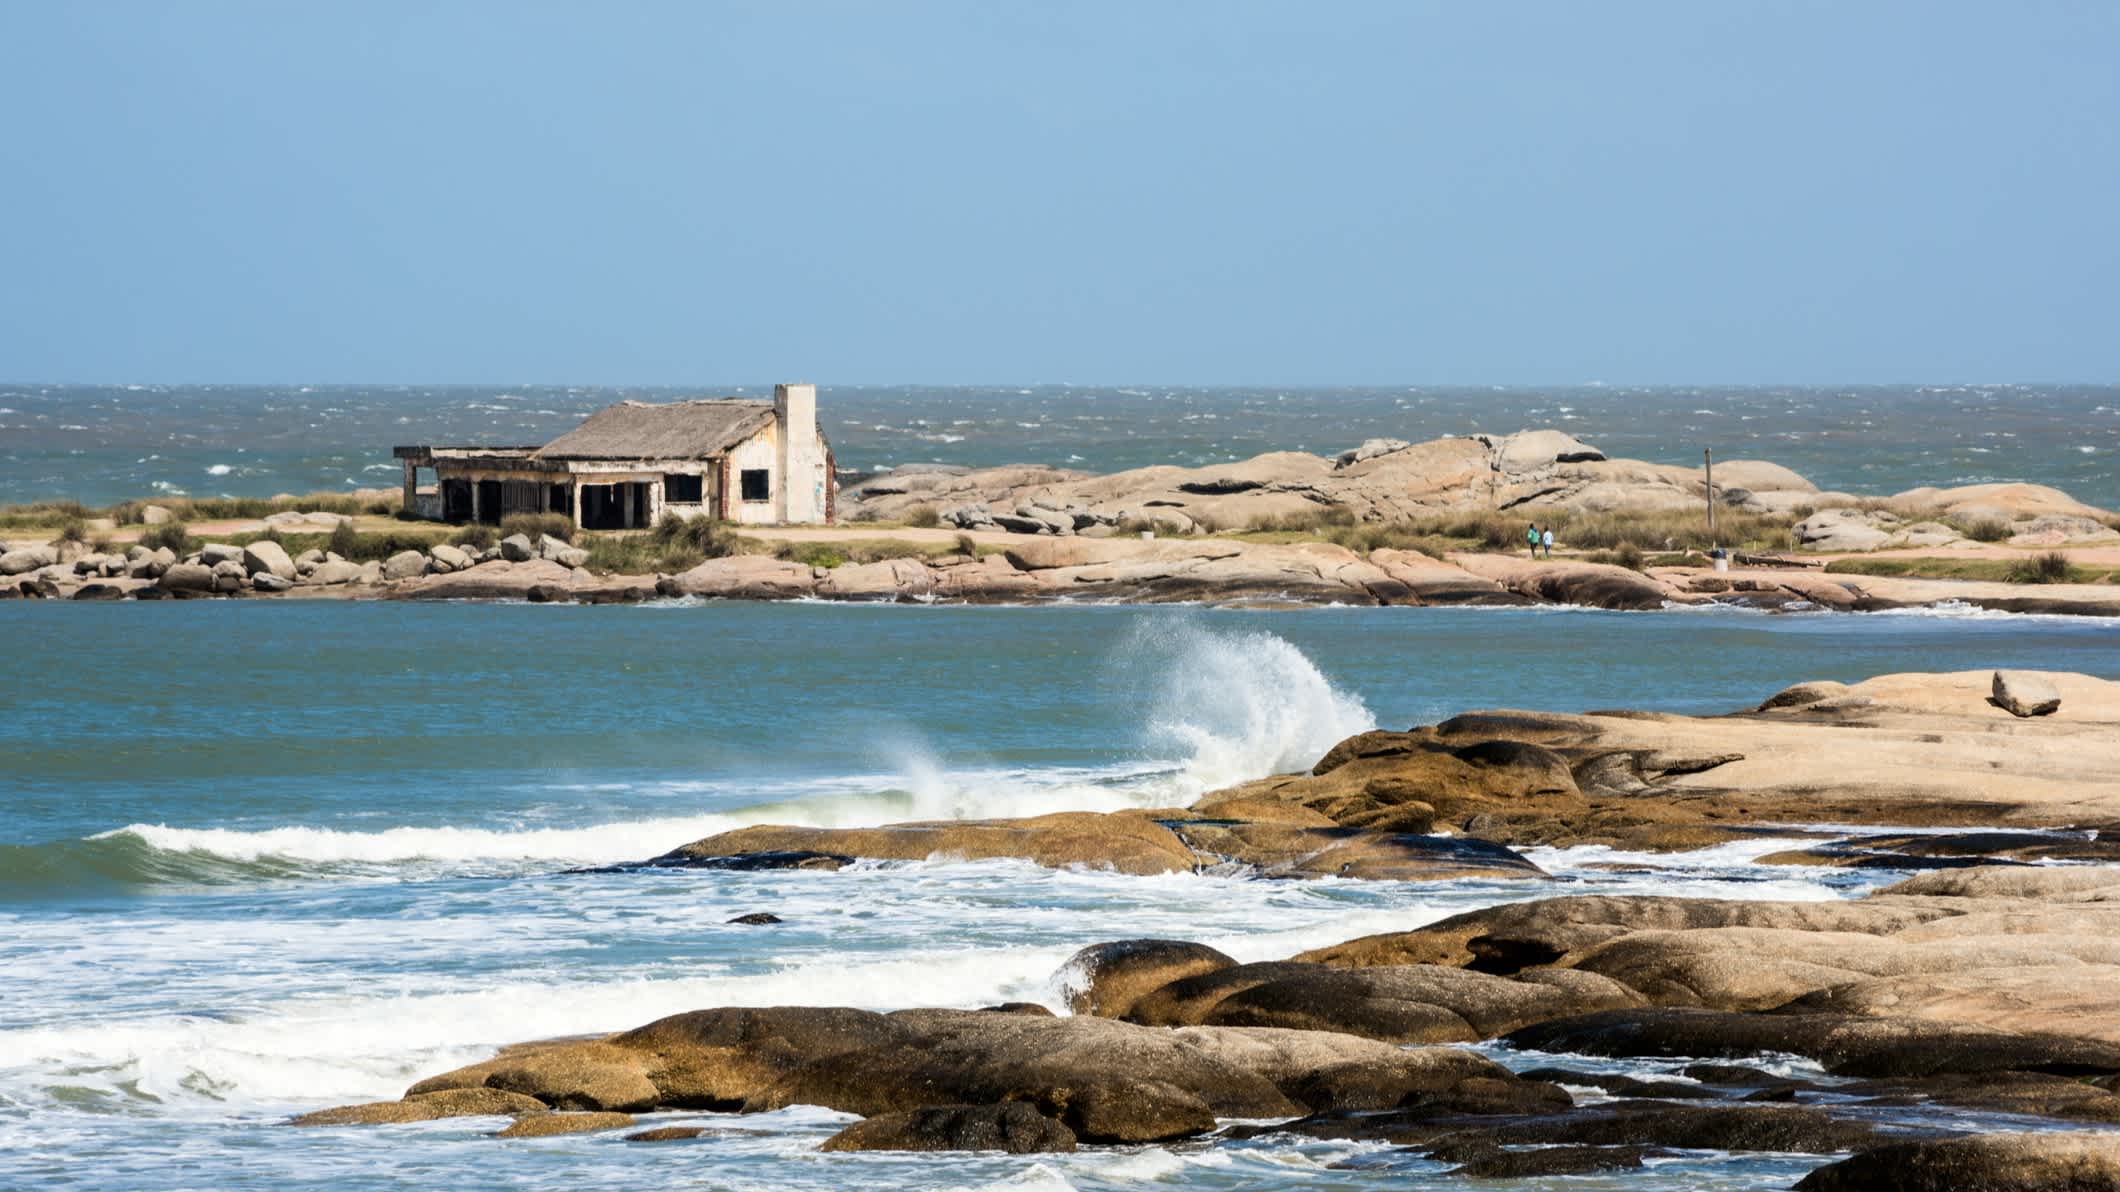 Vue d'une maison au borde de l'eau sur la plage de Punta del Diablo, en Uruguay